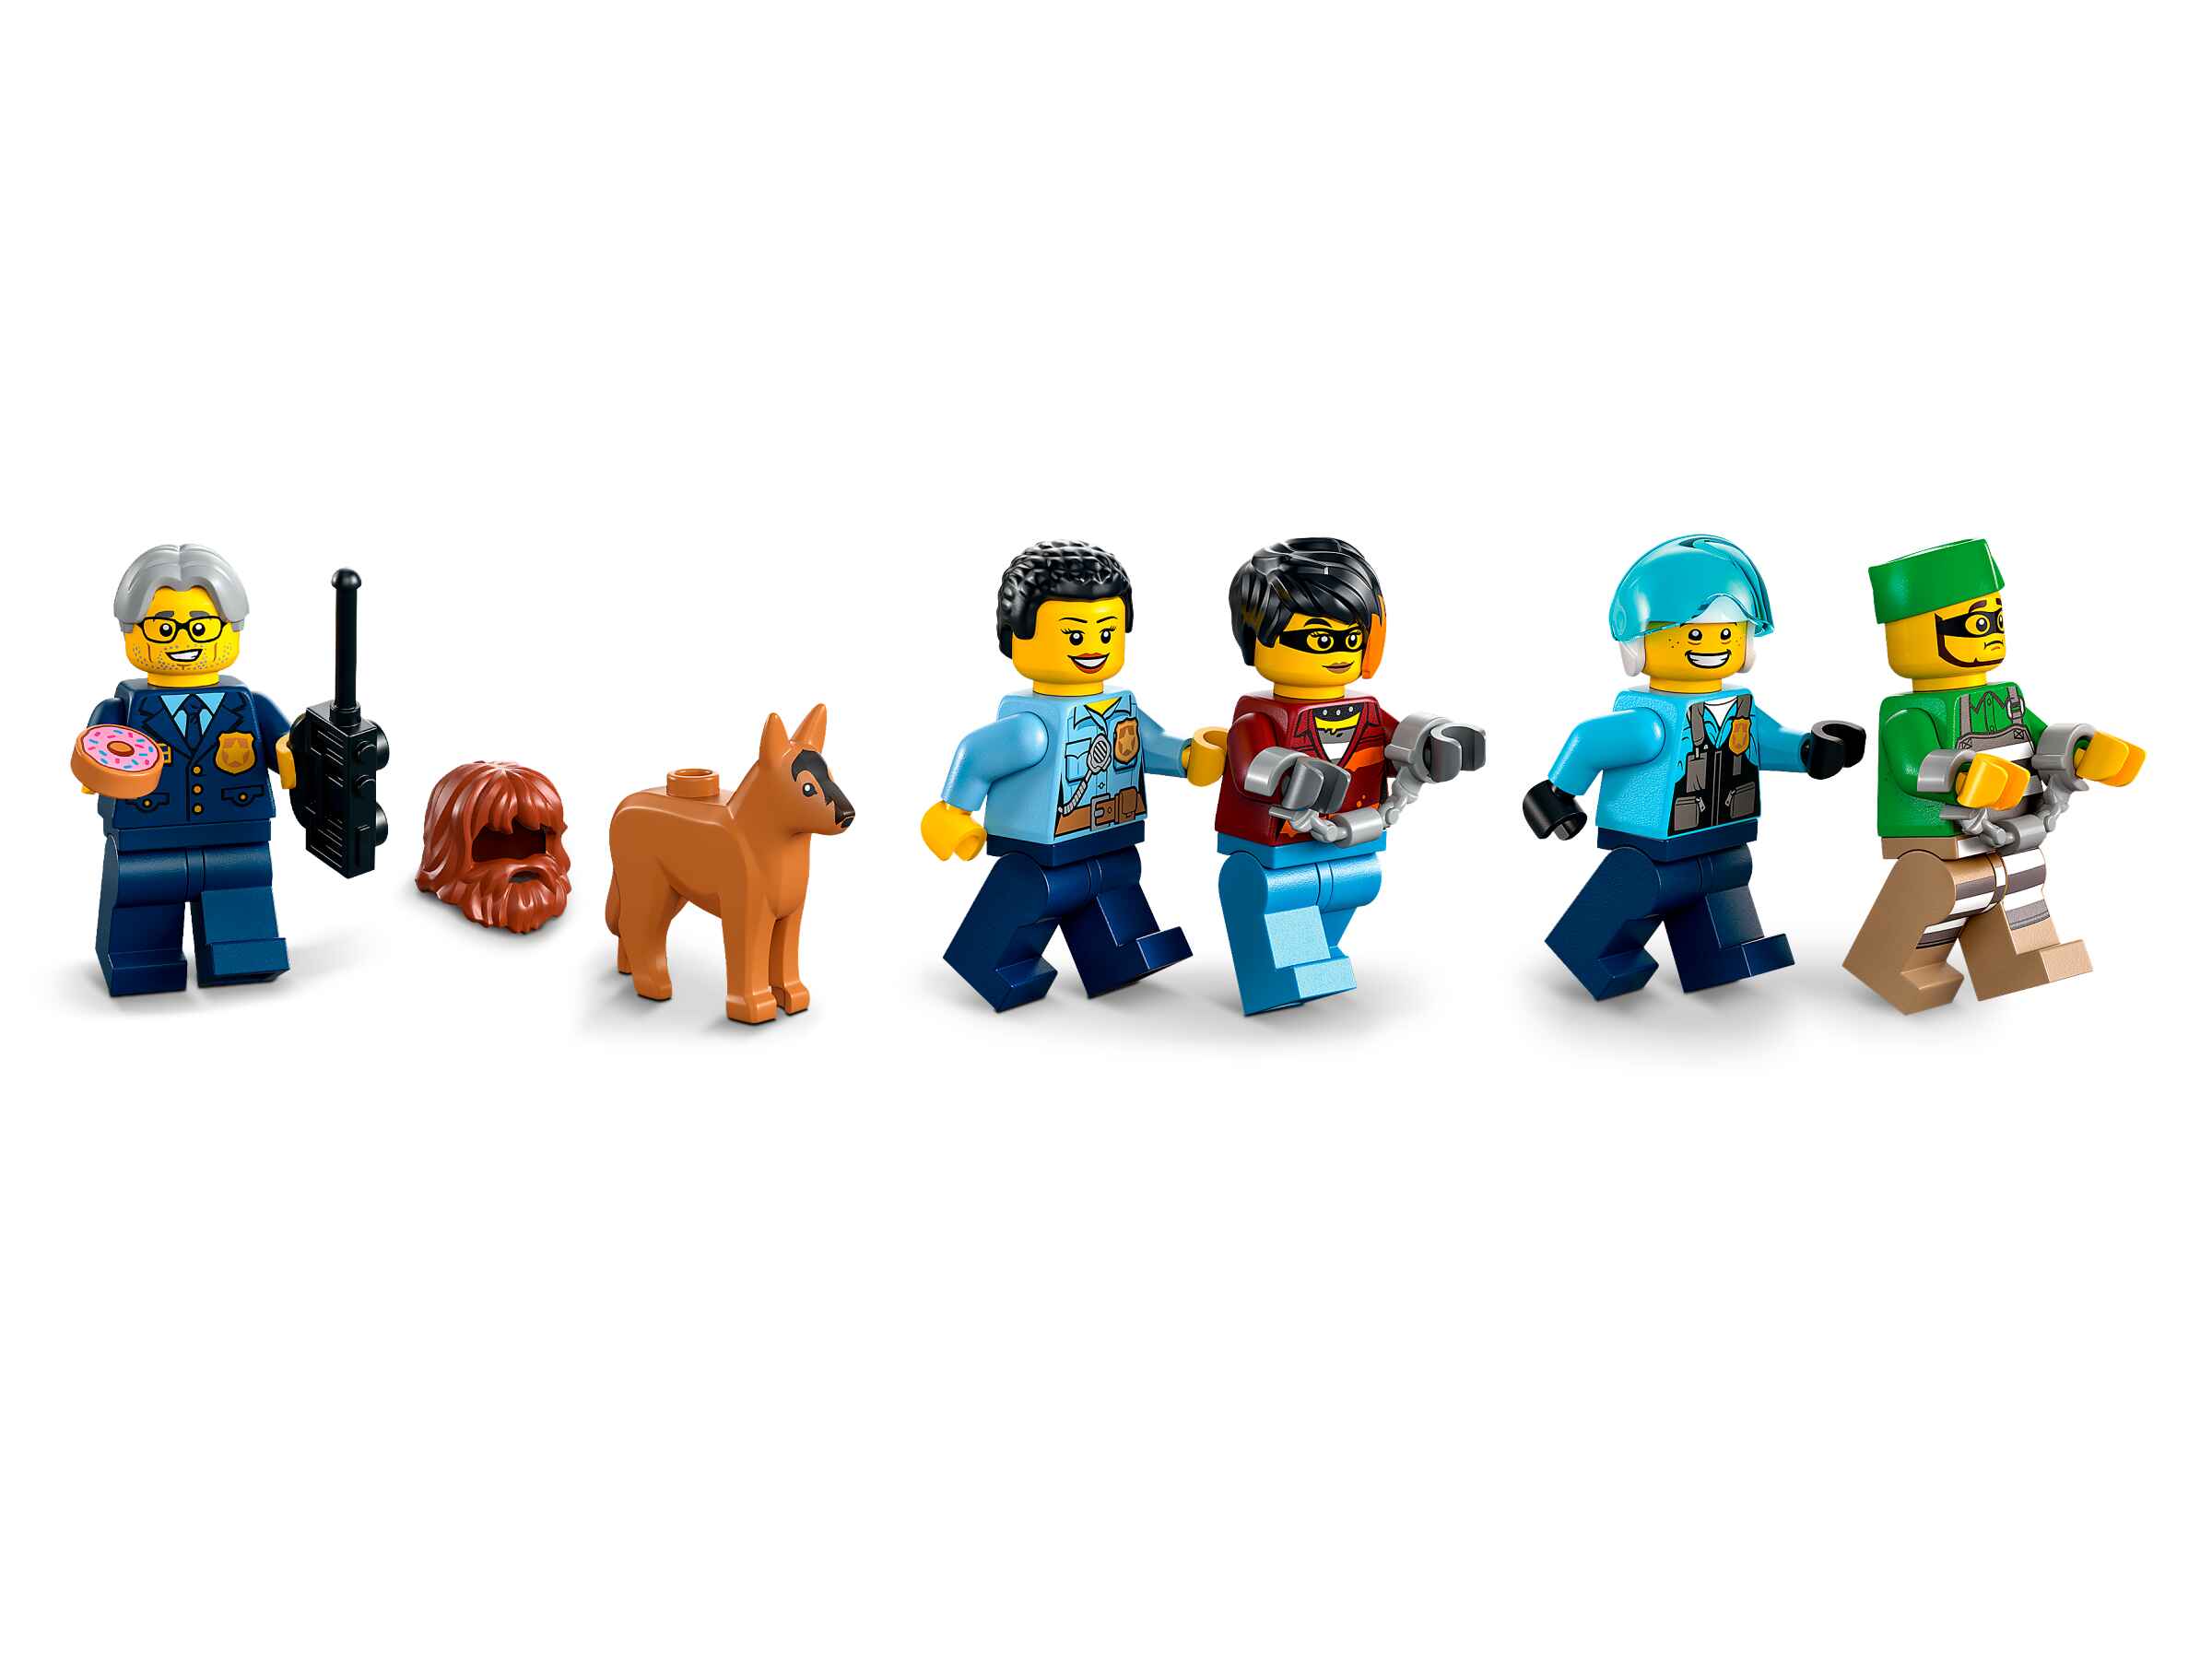 LEGO 60316 City - Polizeistation, 5 Minifiguren, Hubschrauber, Müllauto